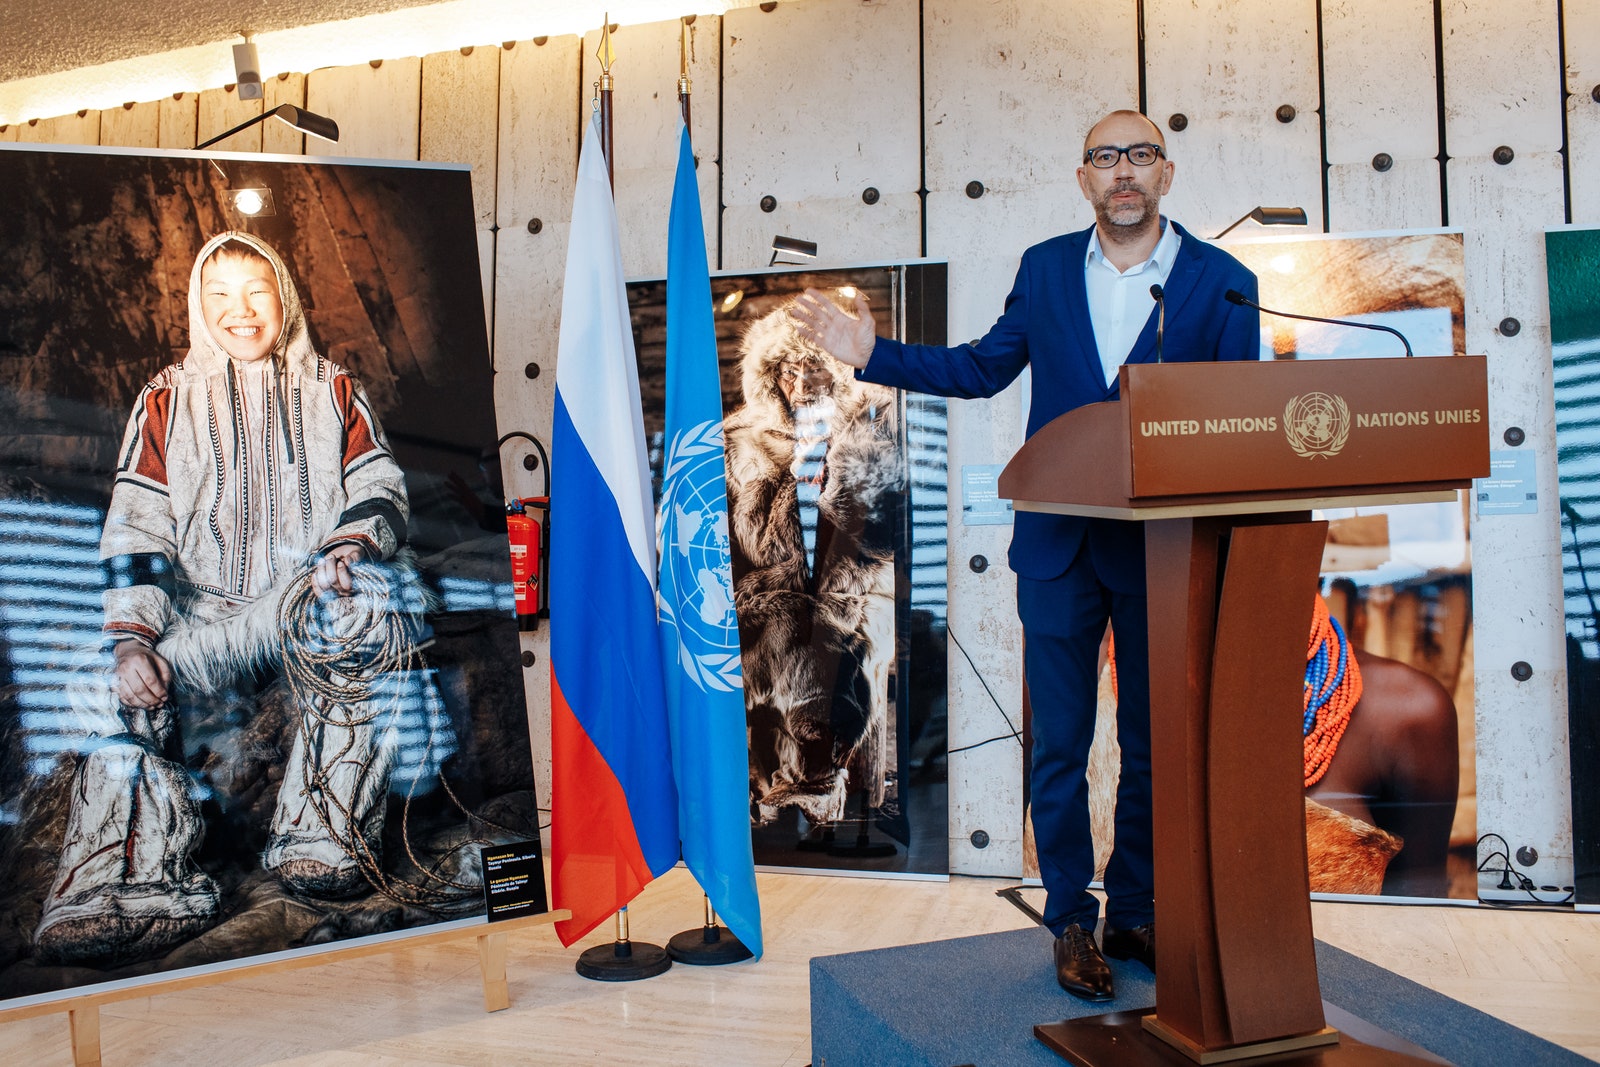 Александр Химушин на открытии своей выставки «Мир в лицах» в отделении ООН в Женеве